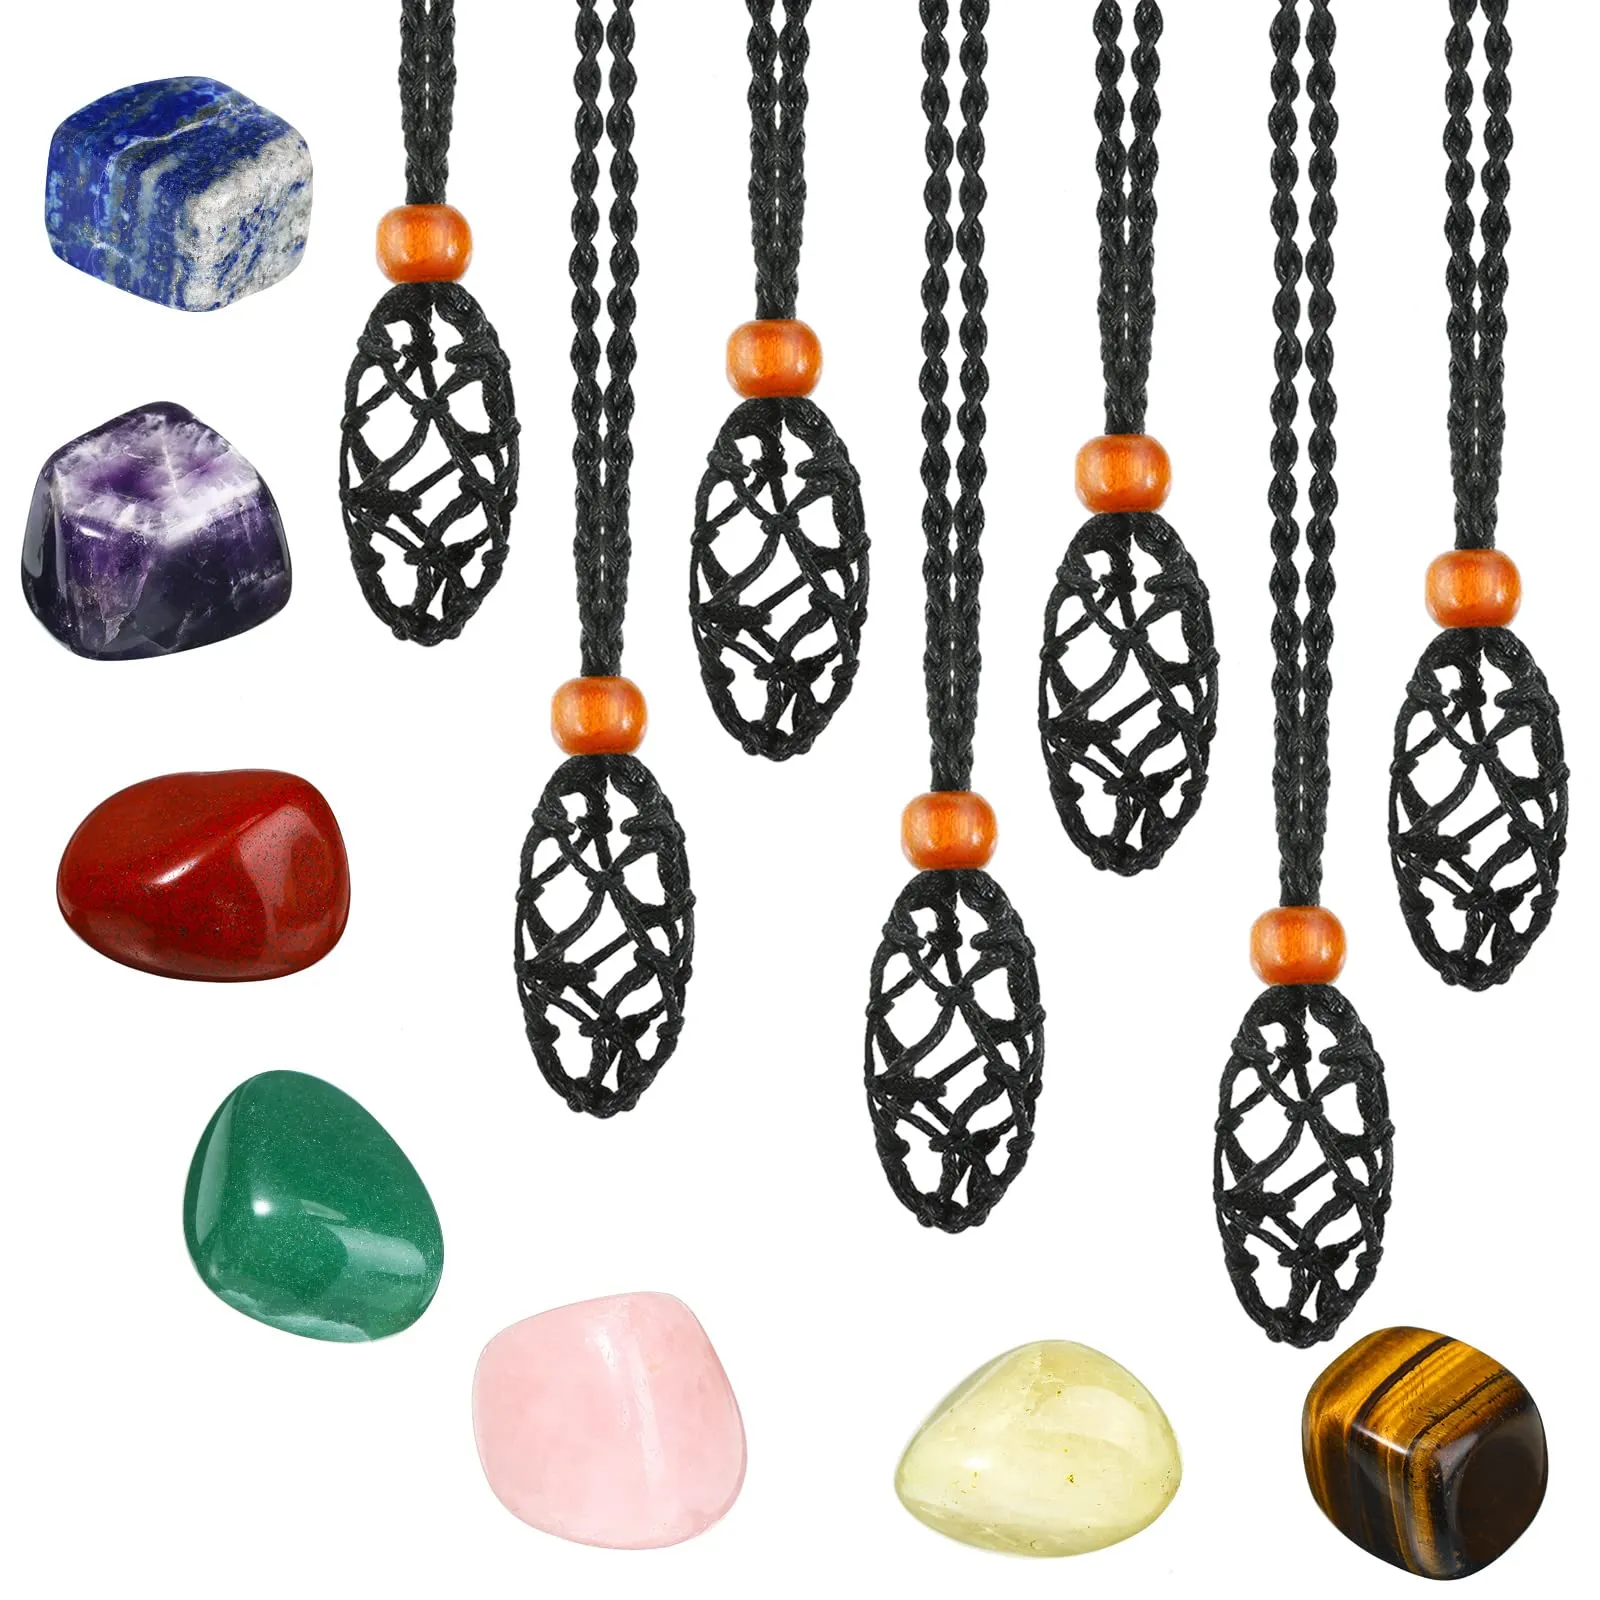 Pendant Necklaces Necklace Crystal Stone Holder With Polished Chakra Empty Ge amADu